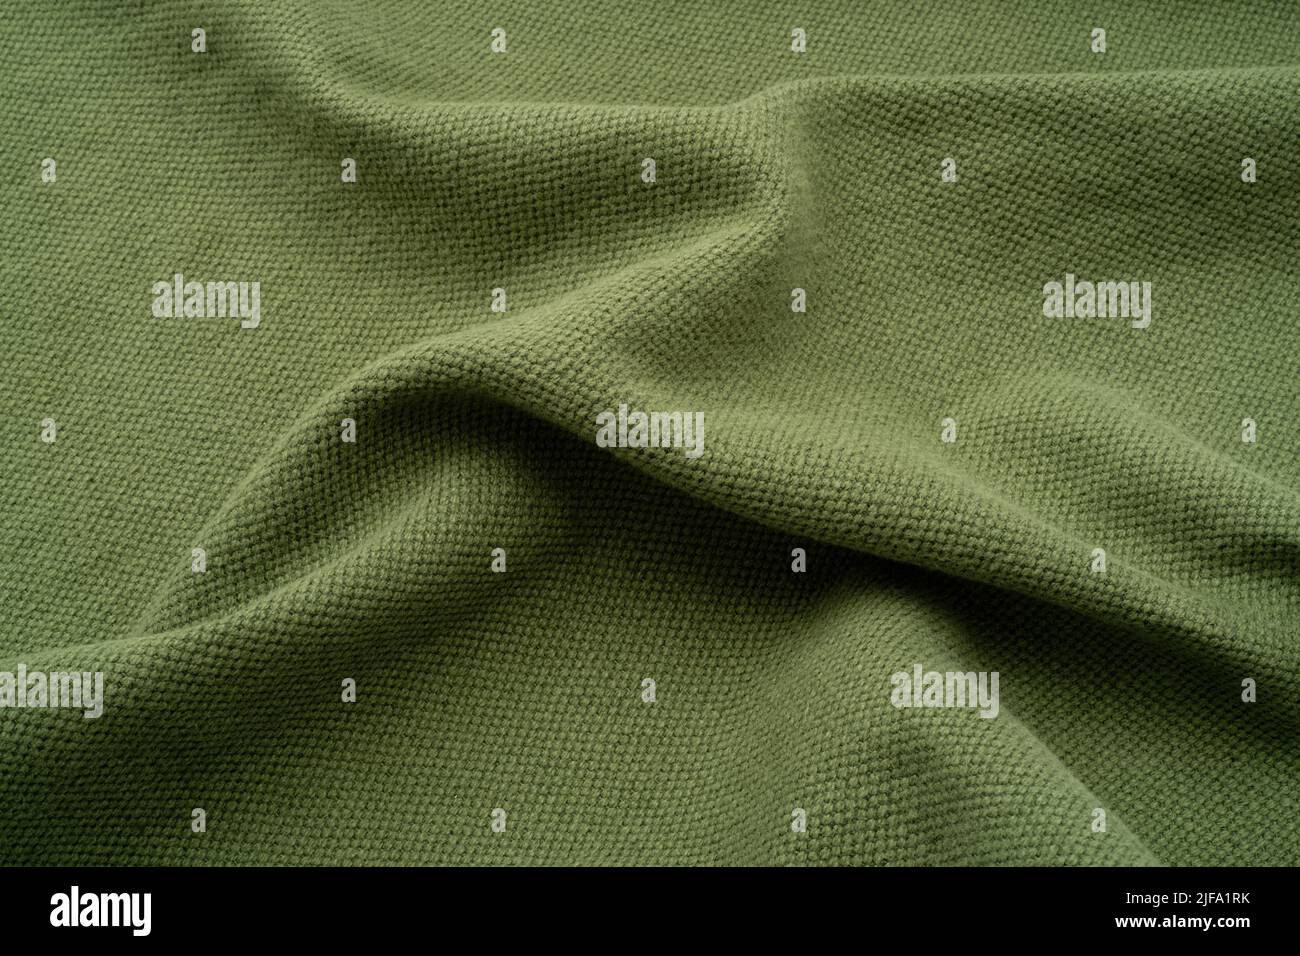 Arrière-plan en tissu texturé. Un lin ruché de couleur vert olive. Banque D'Images